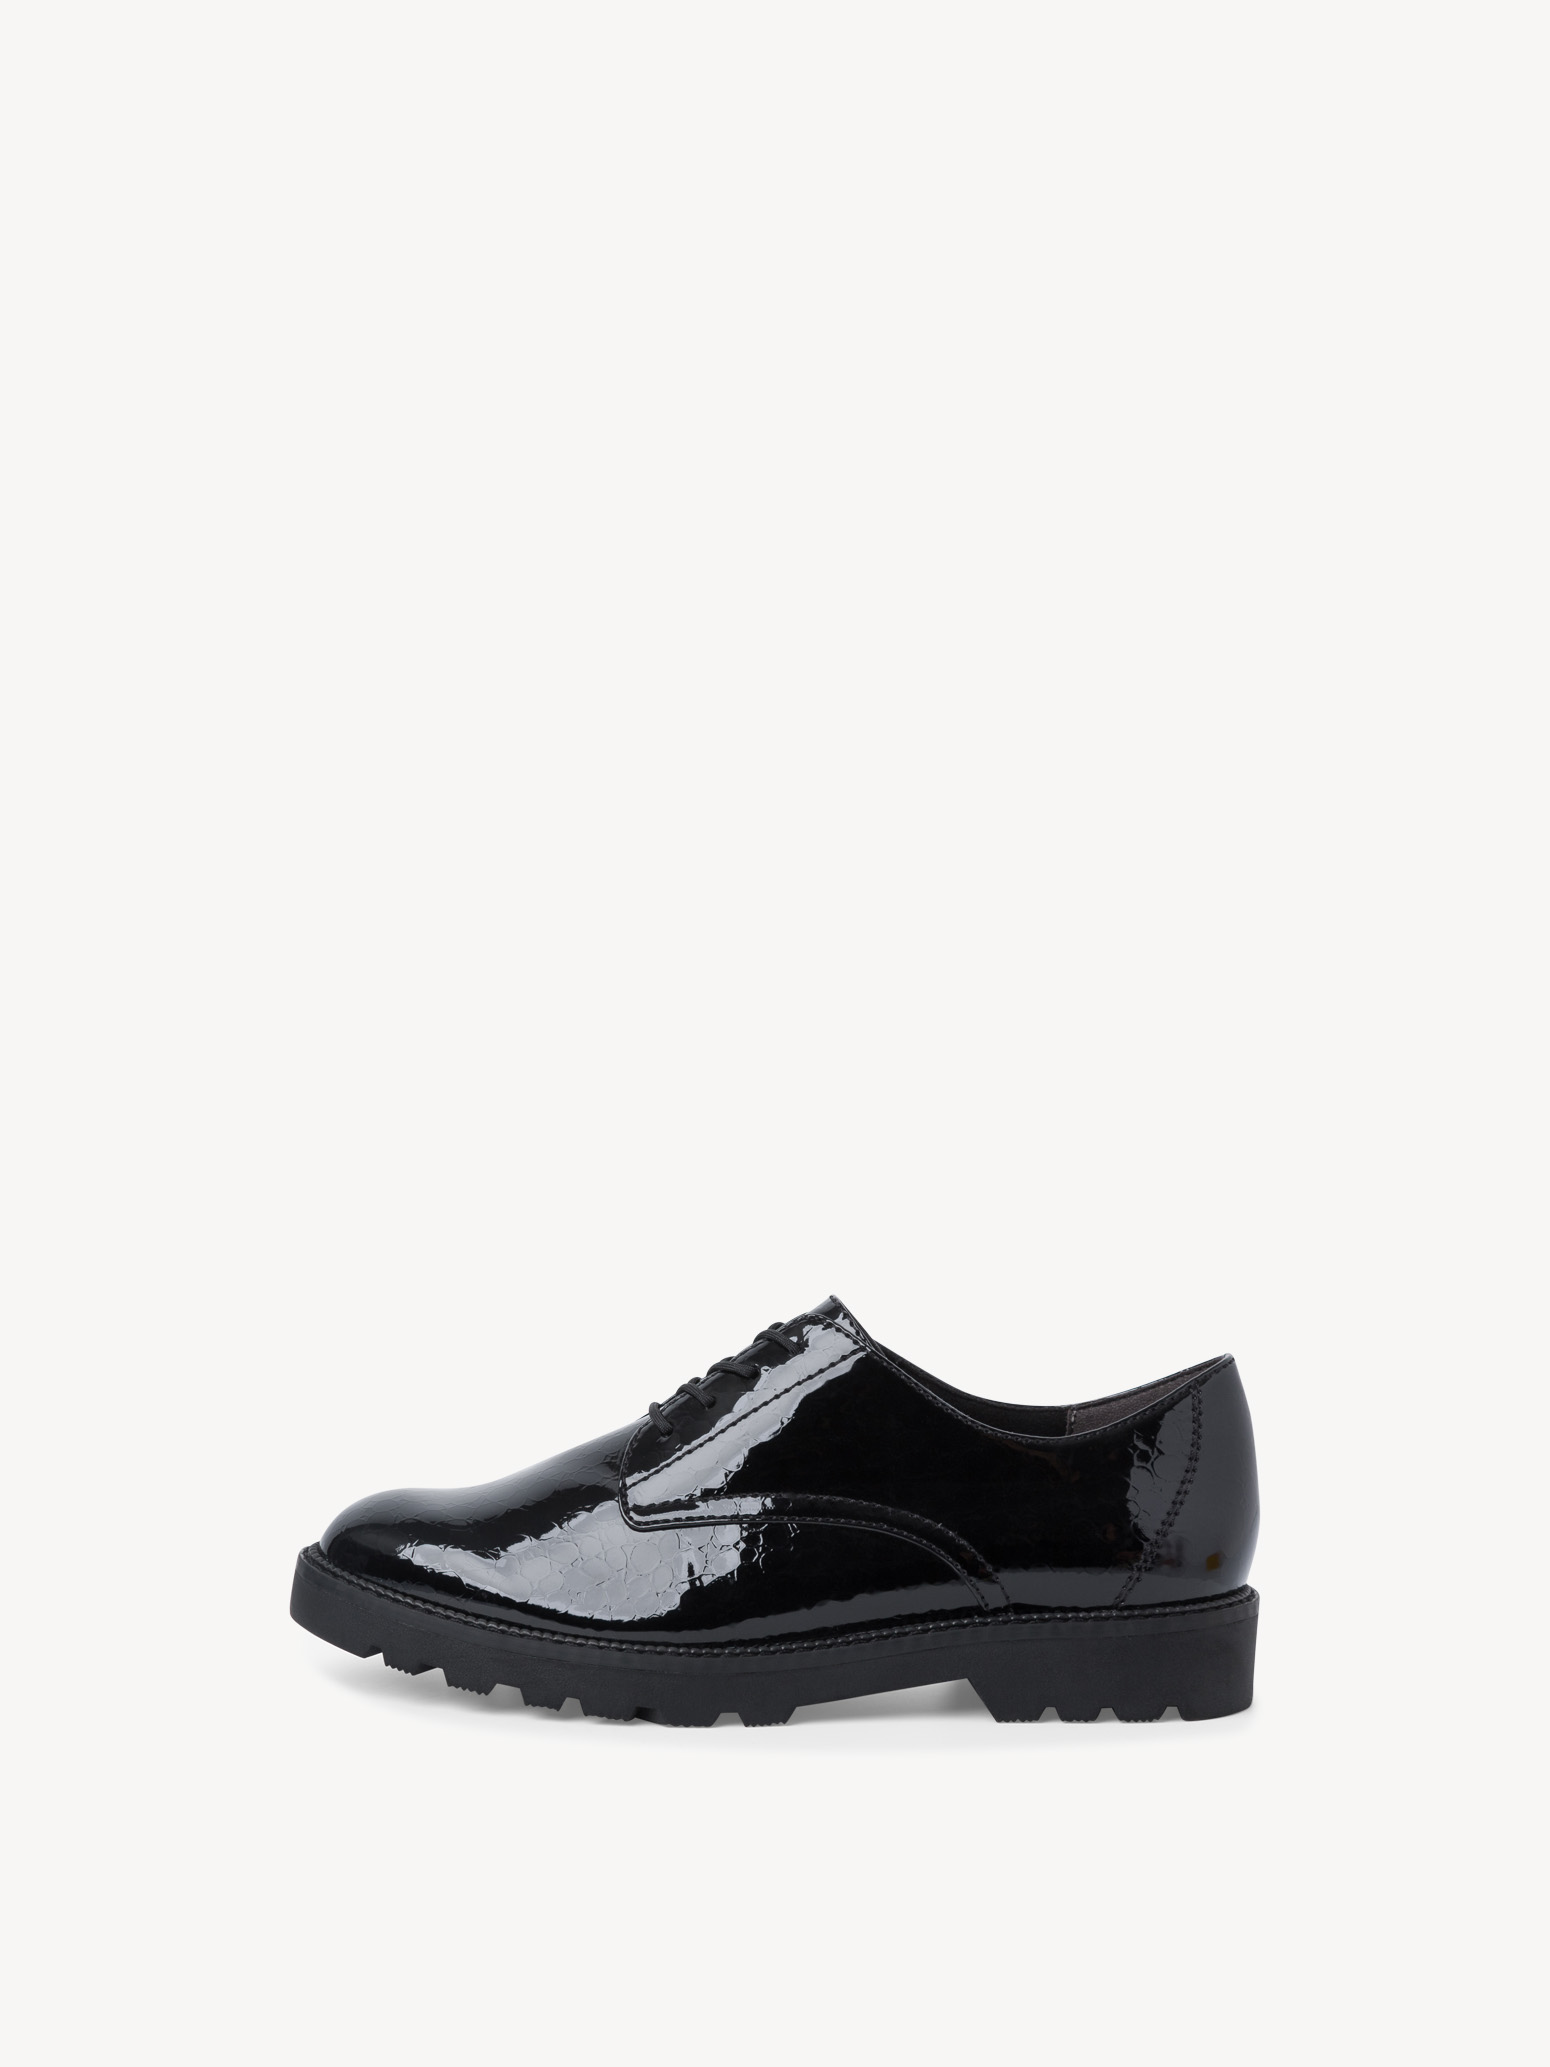 Low shoes - black